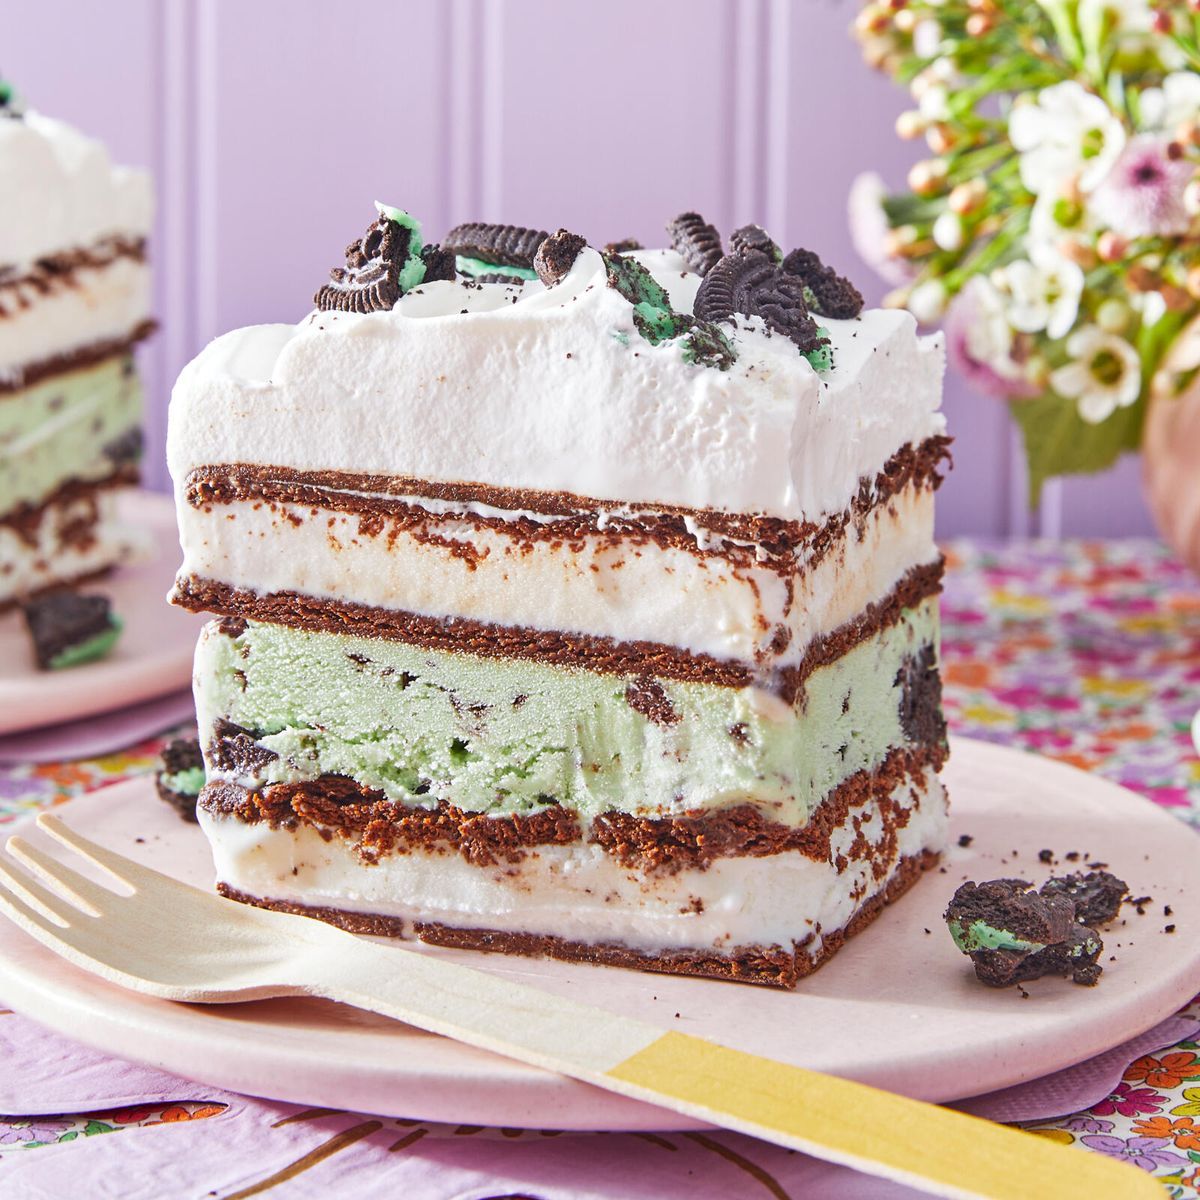 Birthday Ice-Cream Cake | Finding my Inner Chef